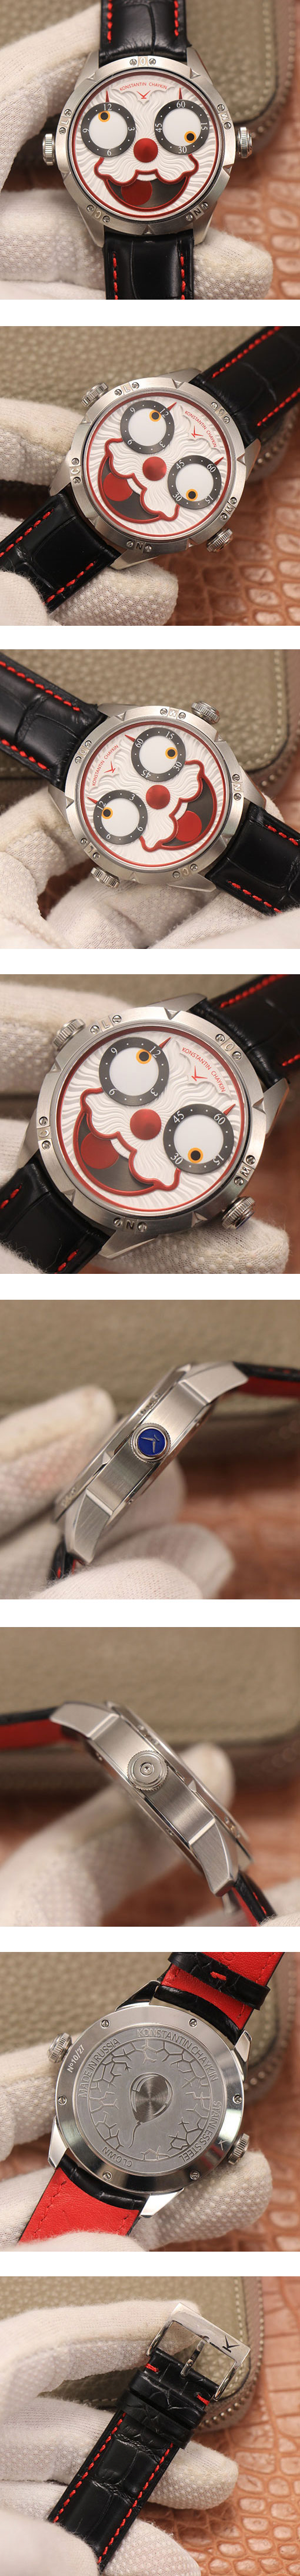 日本人気ブランド時計コピー コンスタンチン・チャイキン ジョーカー